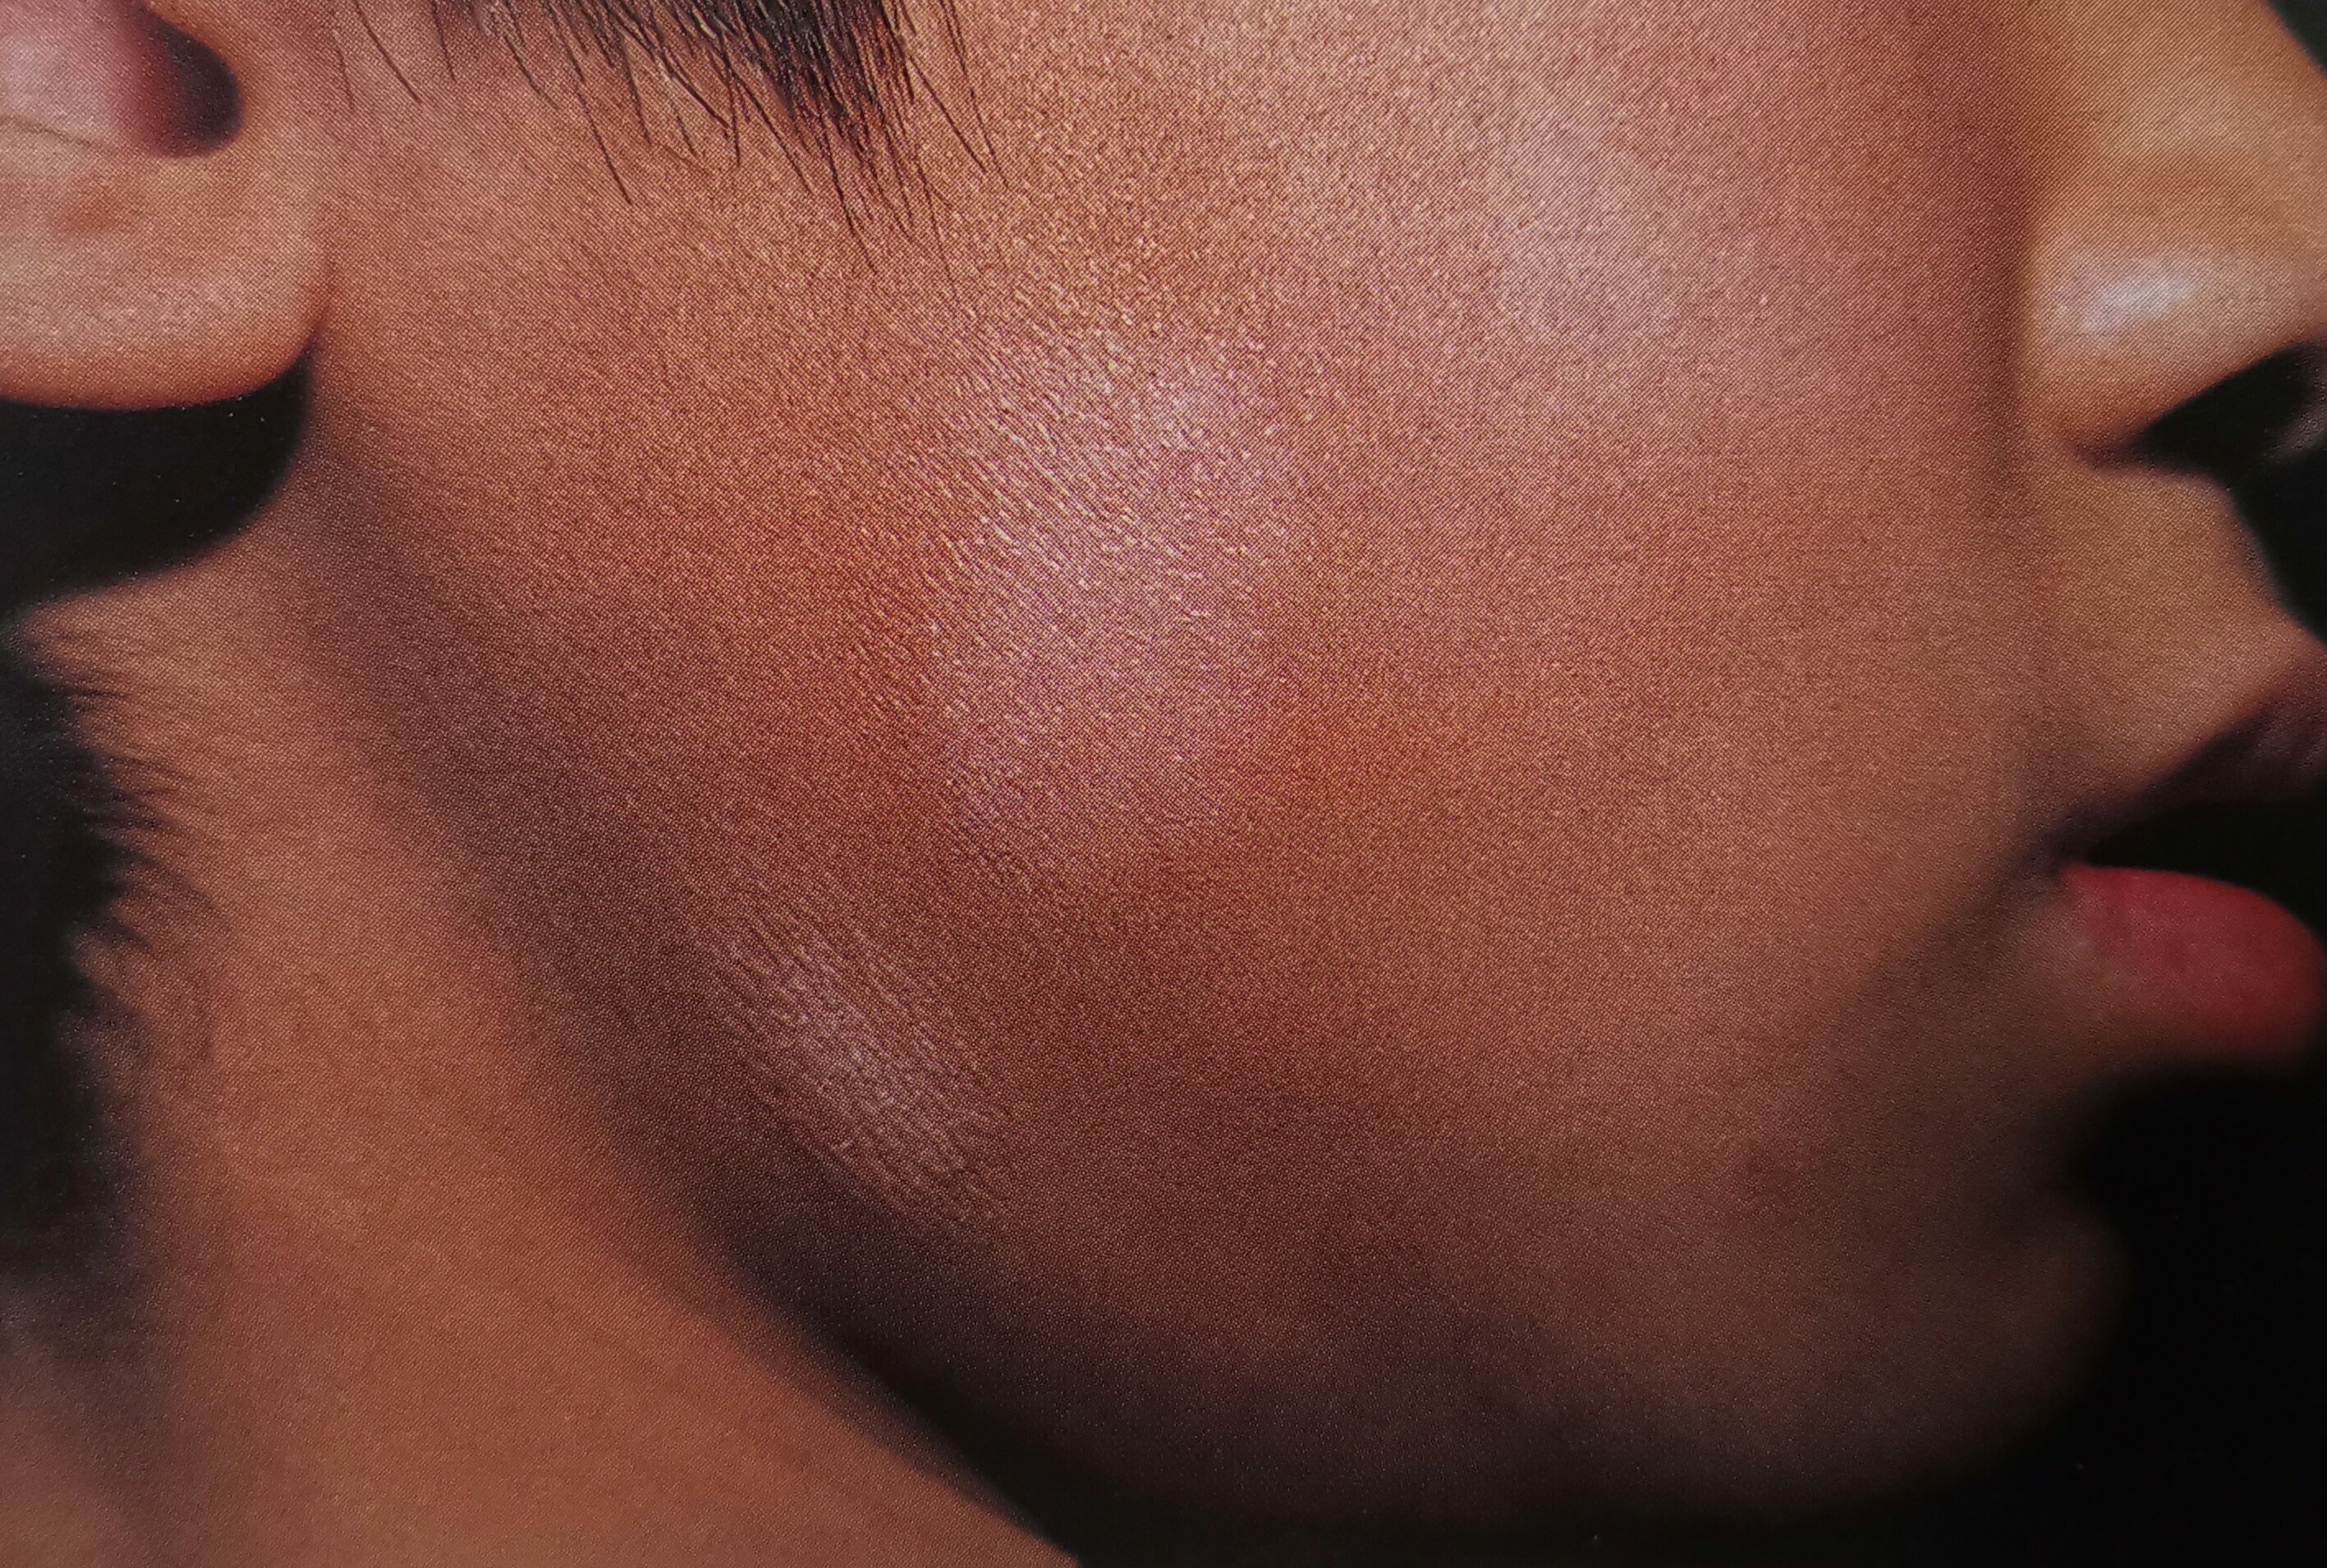 白色糠疹,又名单纯糠疹,俗称虫斑,是以干性细薄糠状鳞屑性色素减退